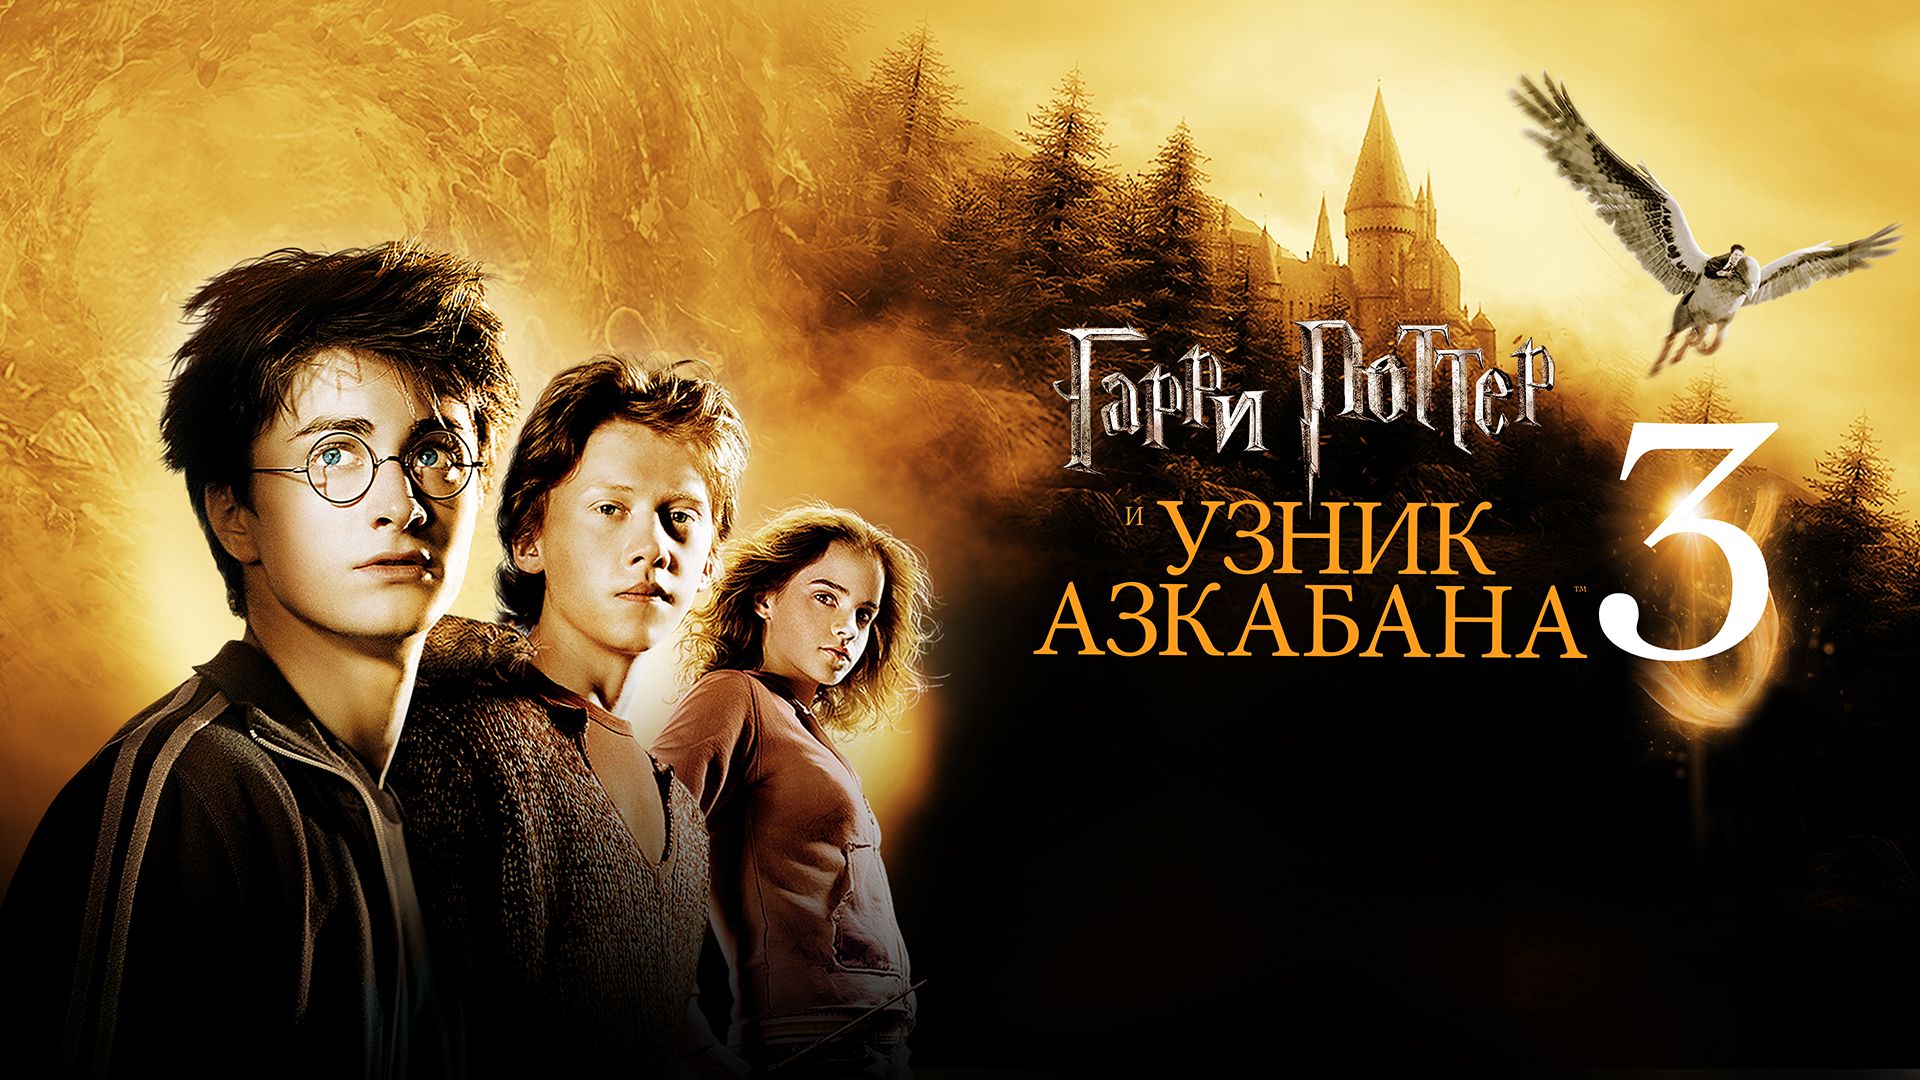 Гарри Поттер и узник Азкабана| Harry Potter and the Prisoner of Azkaban (2004)